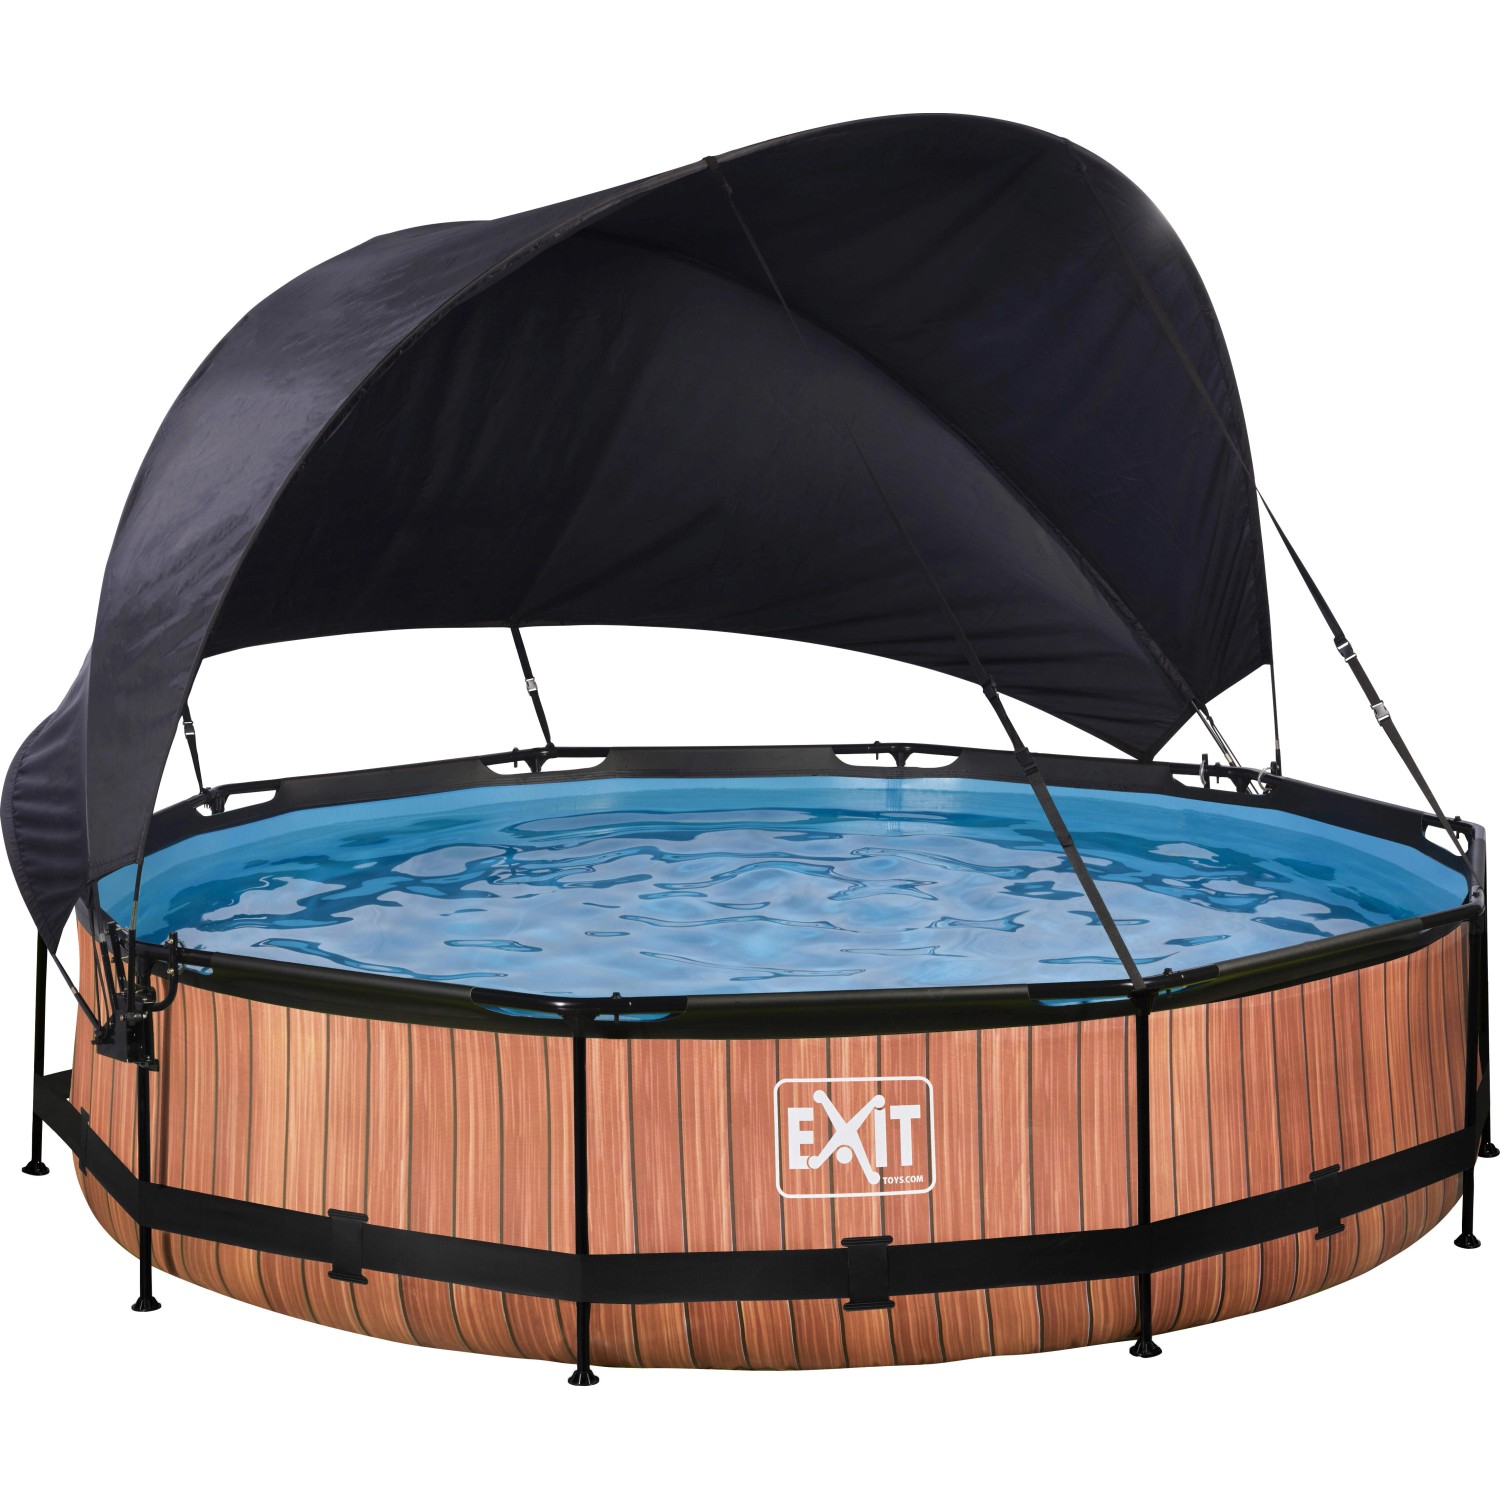 EXIT Wood Pool Braun ø 360 x 76 cm m. Filterpumpe u. Sonnensegel von Exit Toys